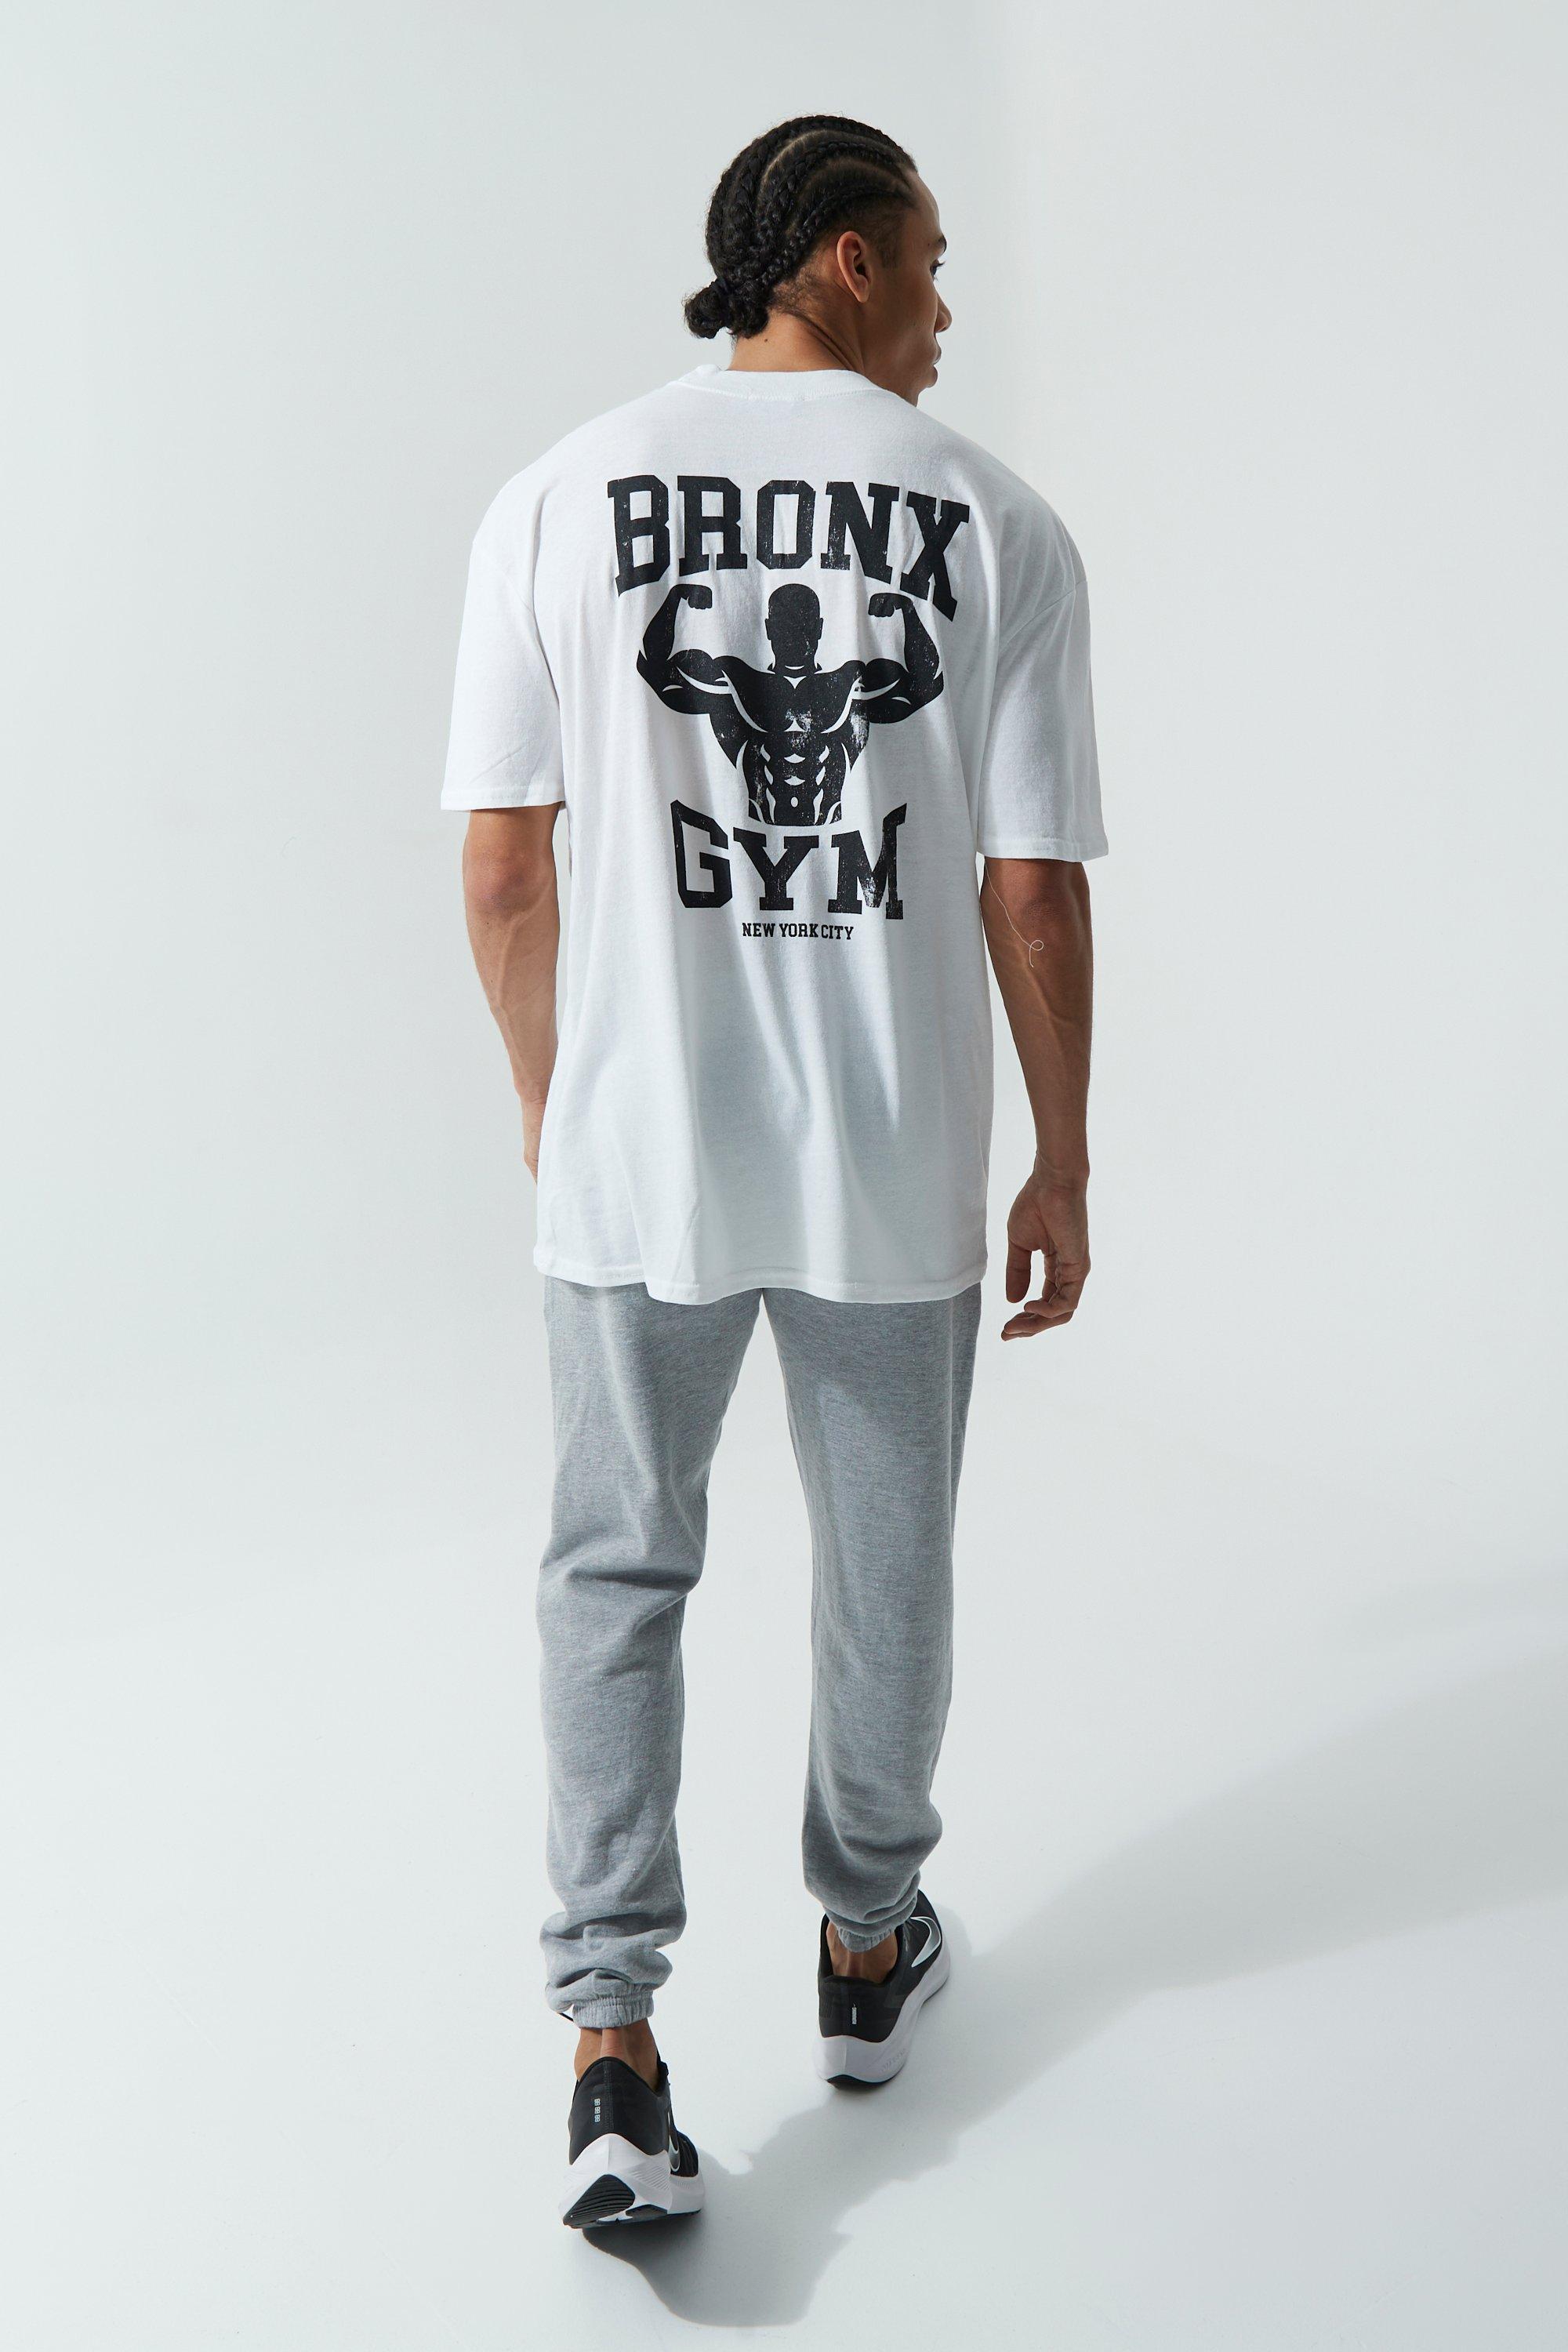 Camiseta de Gym personalizada 100% algodón de máxima calidad ☎️ SubliStamp  Para Hombre Comuvarte Blanco Talla S